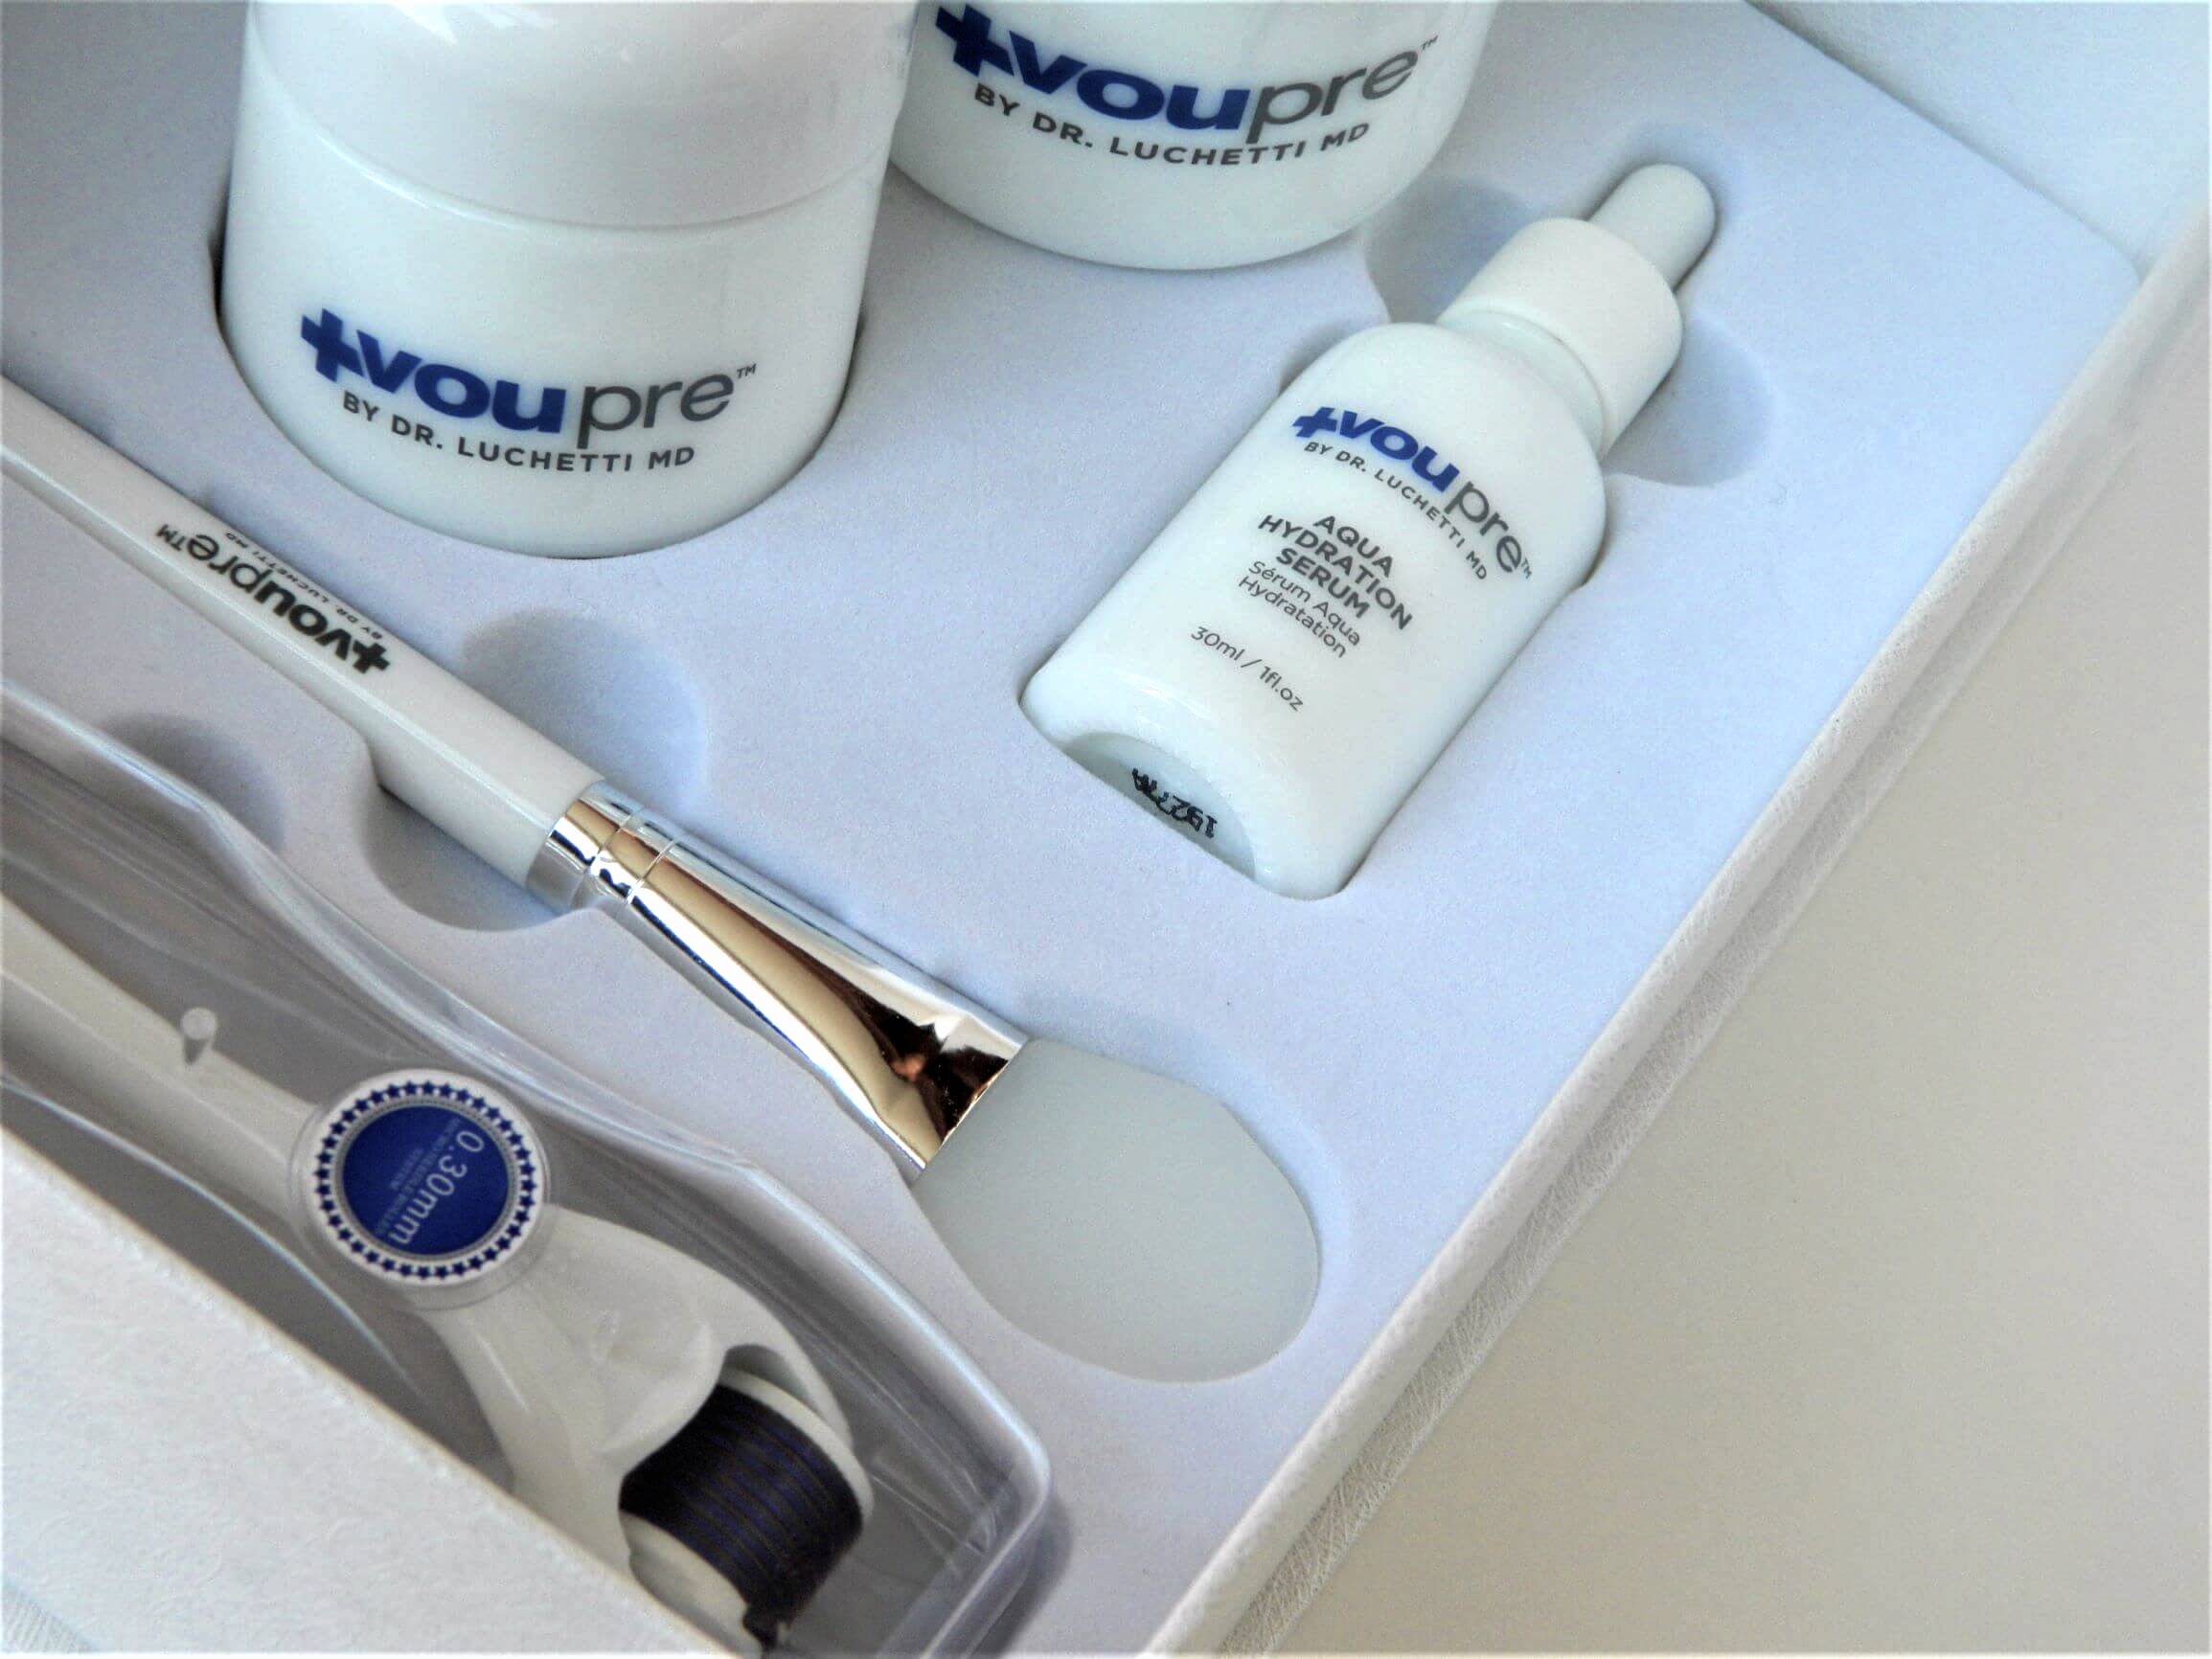 VouPre Aqua Skin Care Collection